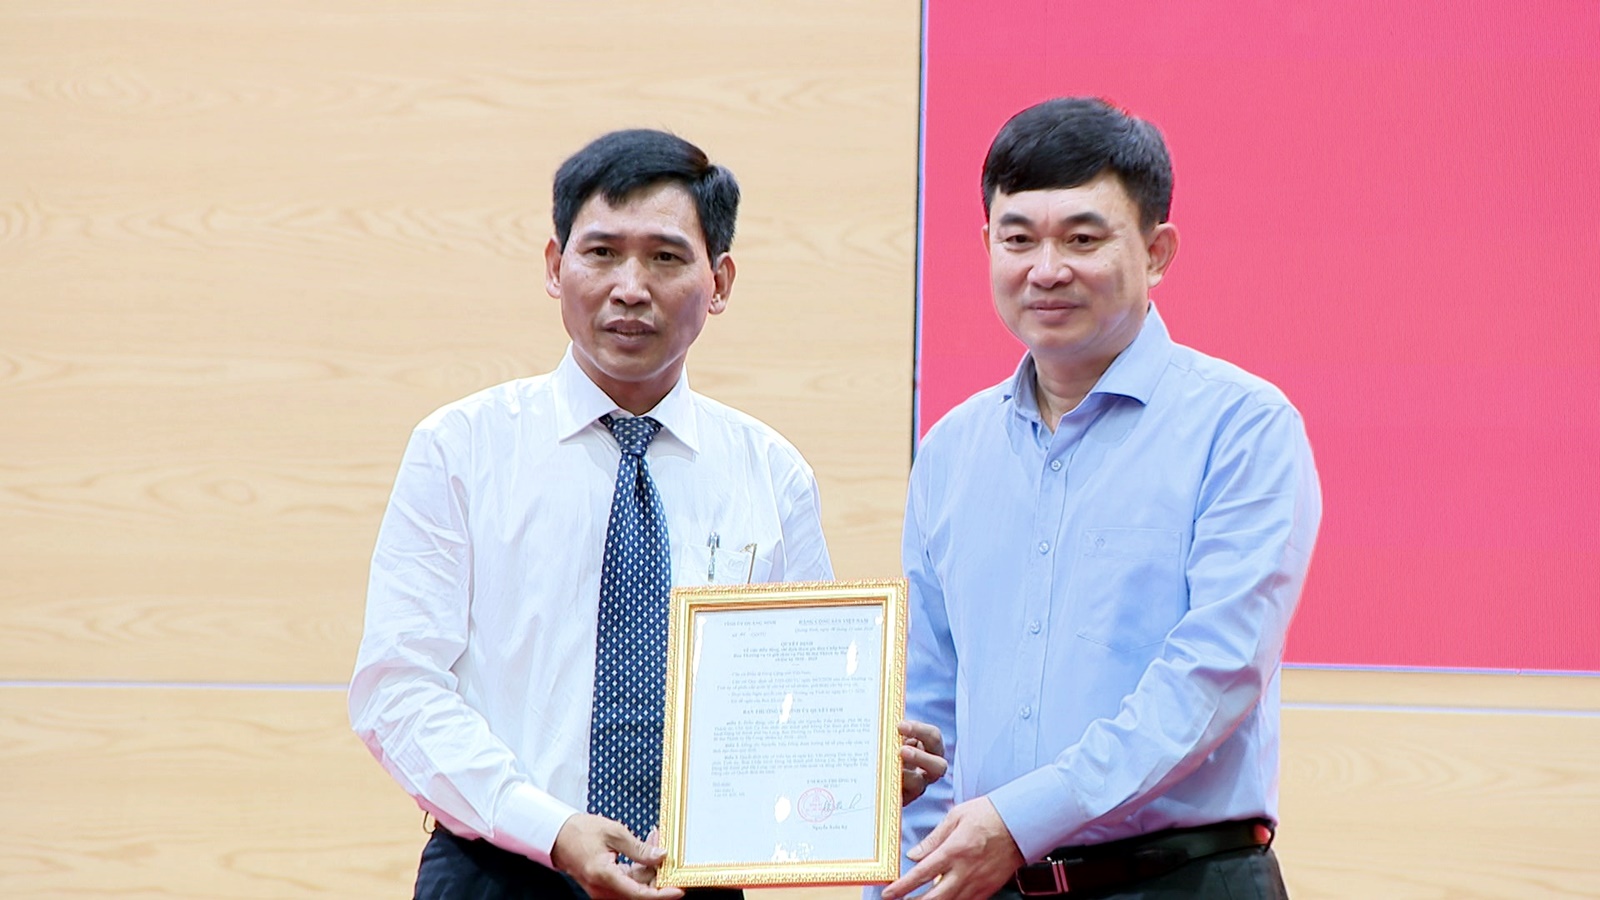 Đồng chí Ngô Hoàng Ngân, Phó Bí thư Thường trực Tỉnh ủy trao quyết định của Tỉnh ủy cho đồng chí Lê Hùng Sơn.